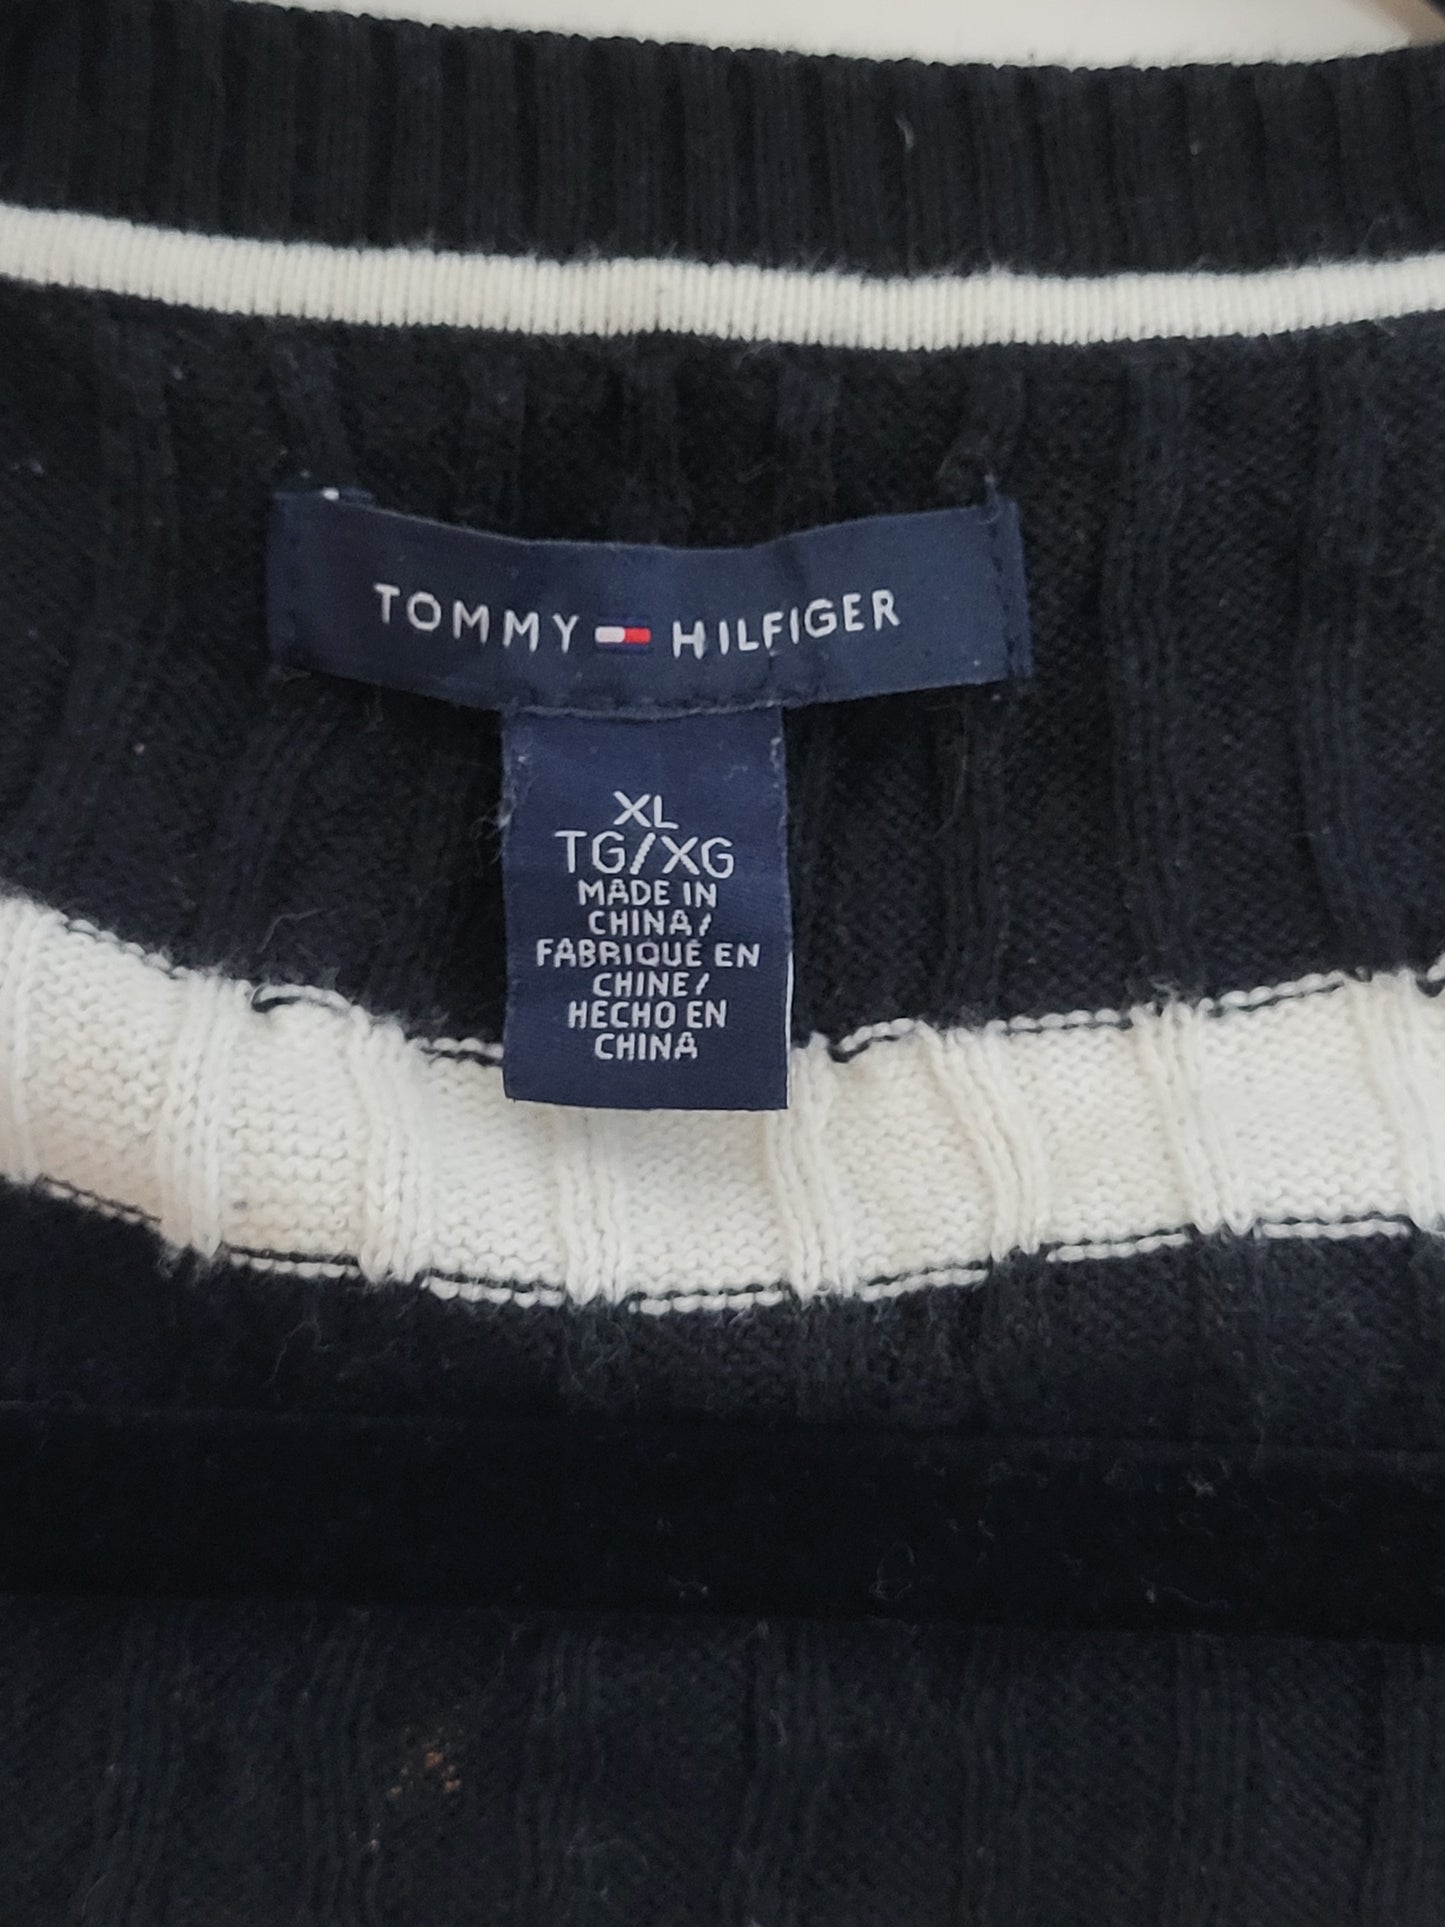 Tommy Hilfiger - Pulli - Streifen - Schwarz - Damen - XL